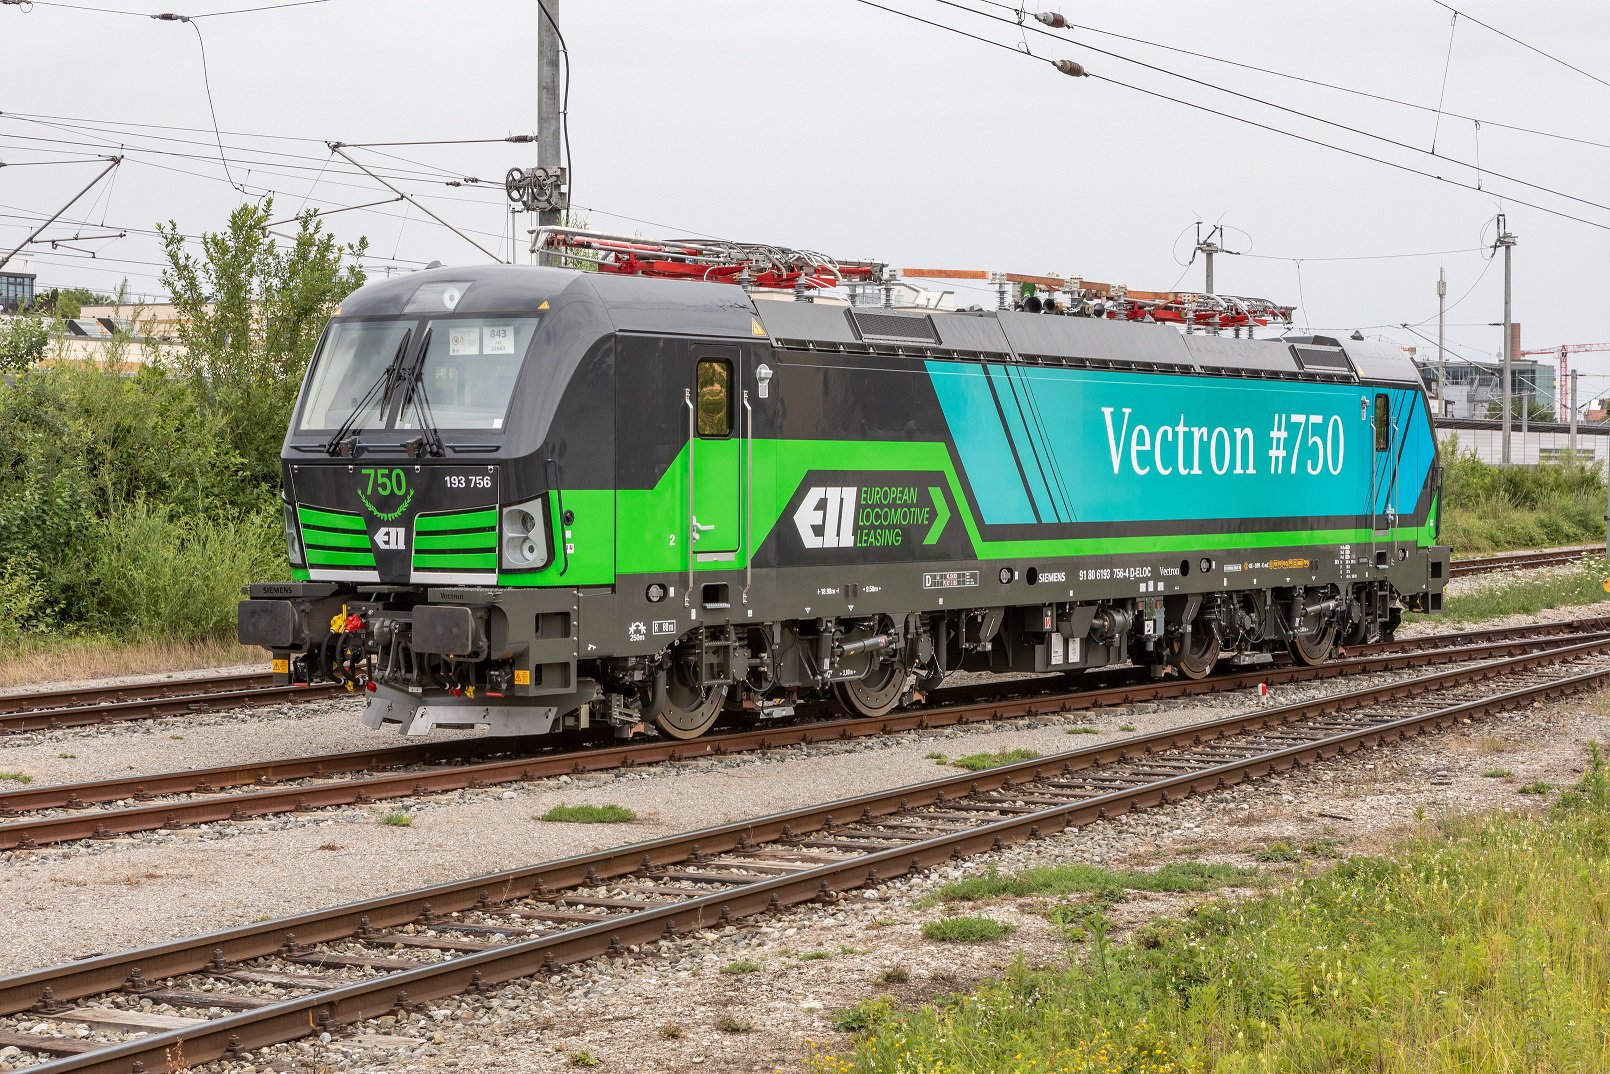 Már hétszázötven Vectron dolgozik az európai síneken (kép forrása: Twitter, Siemens Mobility)